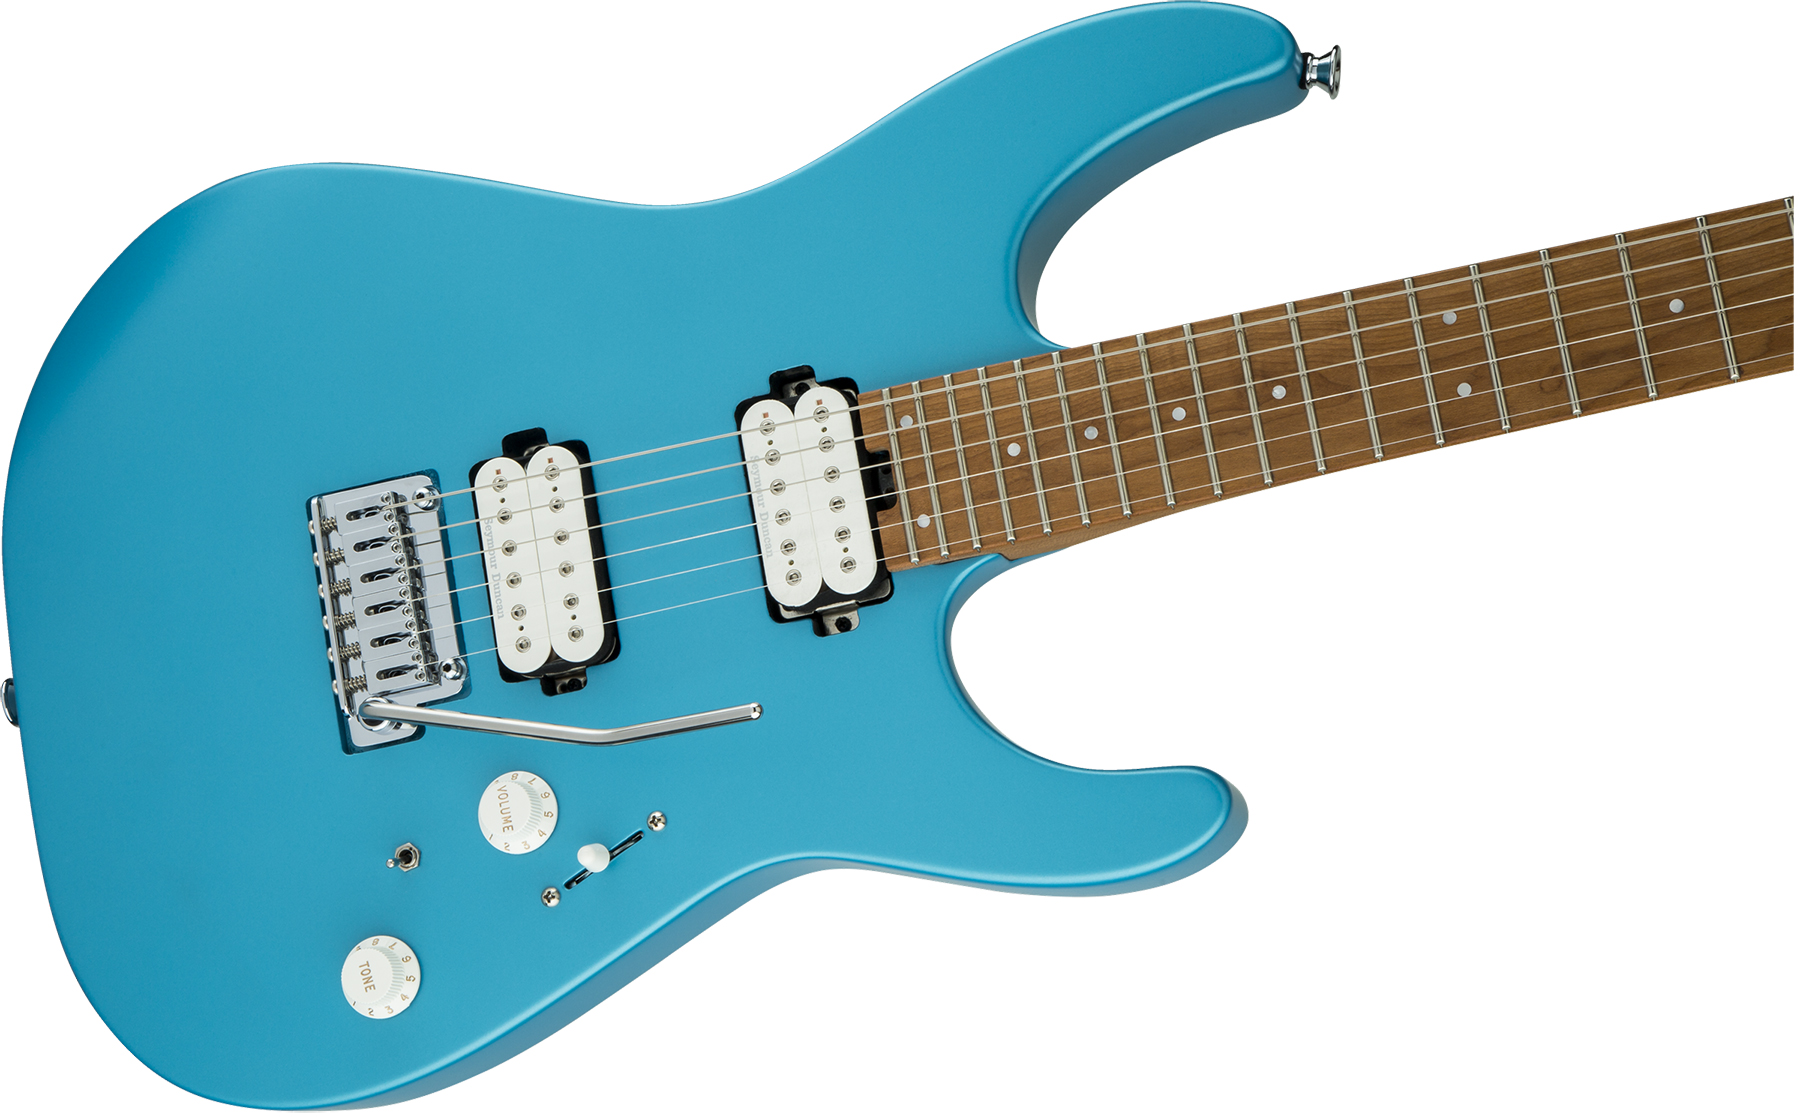 Charvel Pro-mod Dk24 Hh 2pt Cm Seymour Duncan Trem Mn - Matte Blue Frost - Guitarra eléctrica con forma de str. - Variation 2